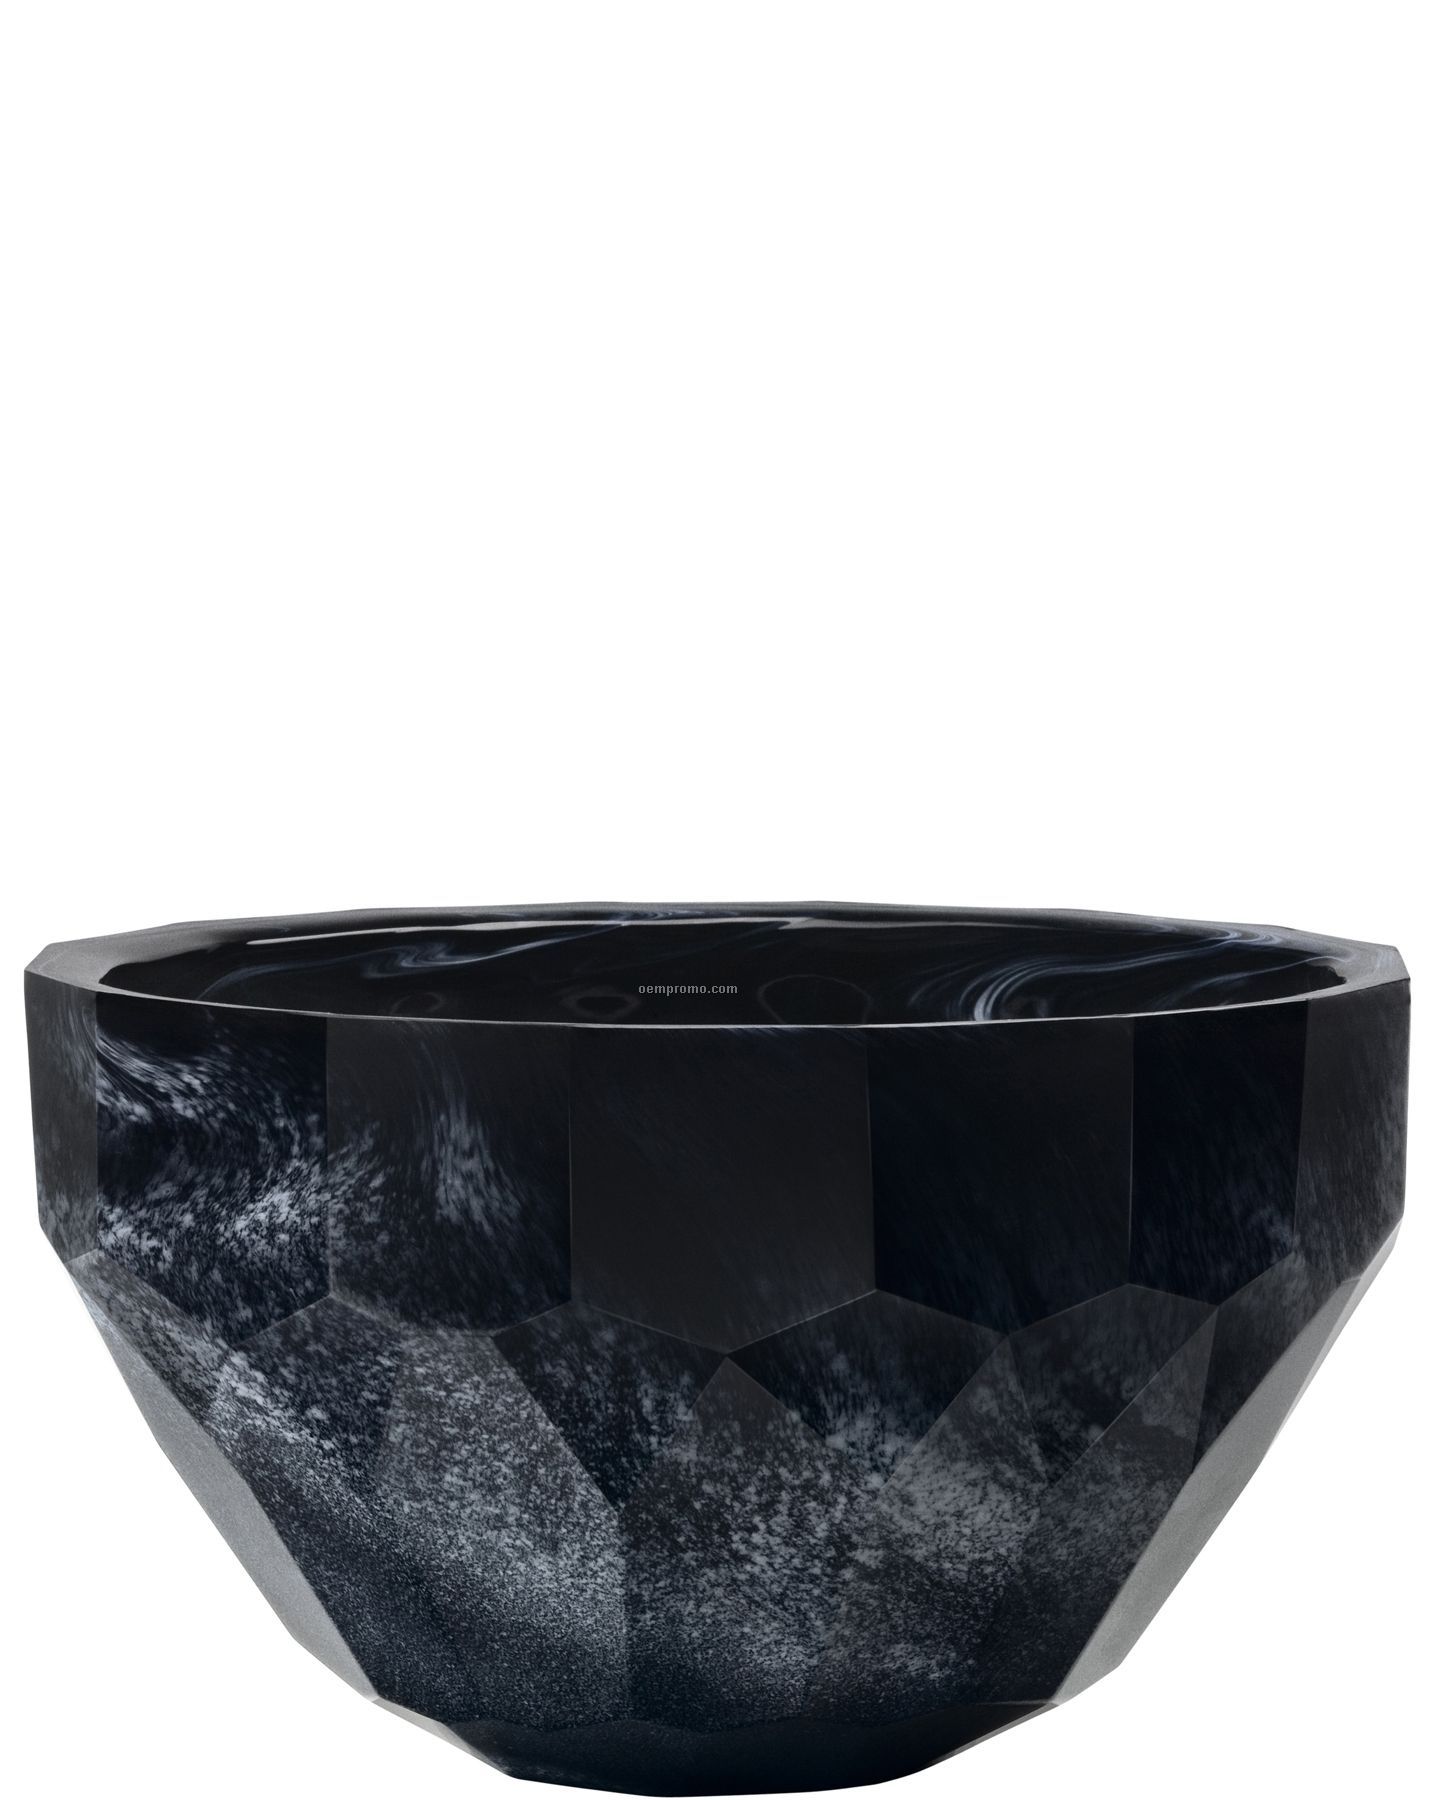 Diva Granite Look Bowl By Asa Jungnelius